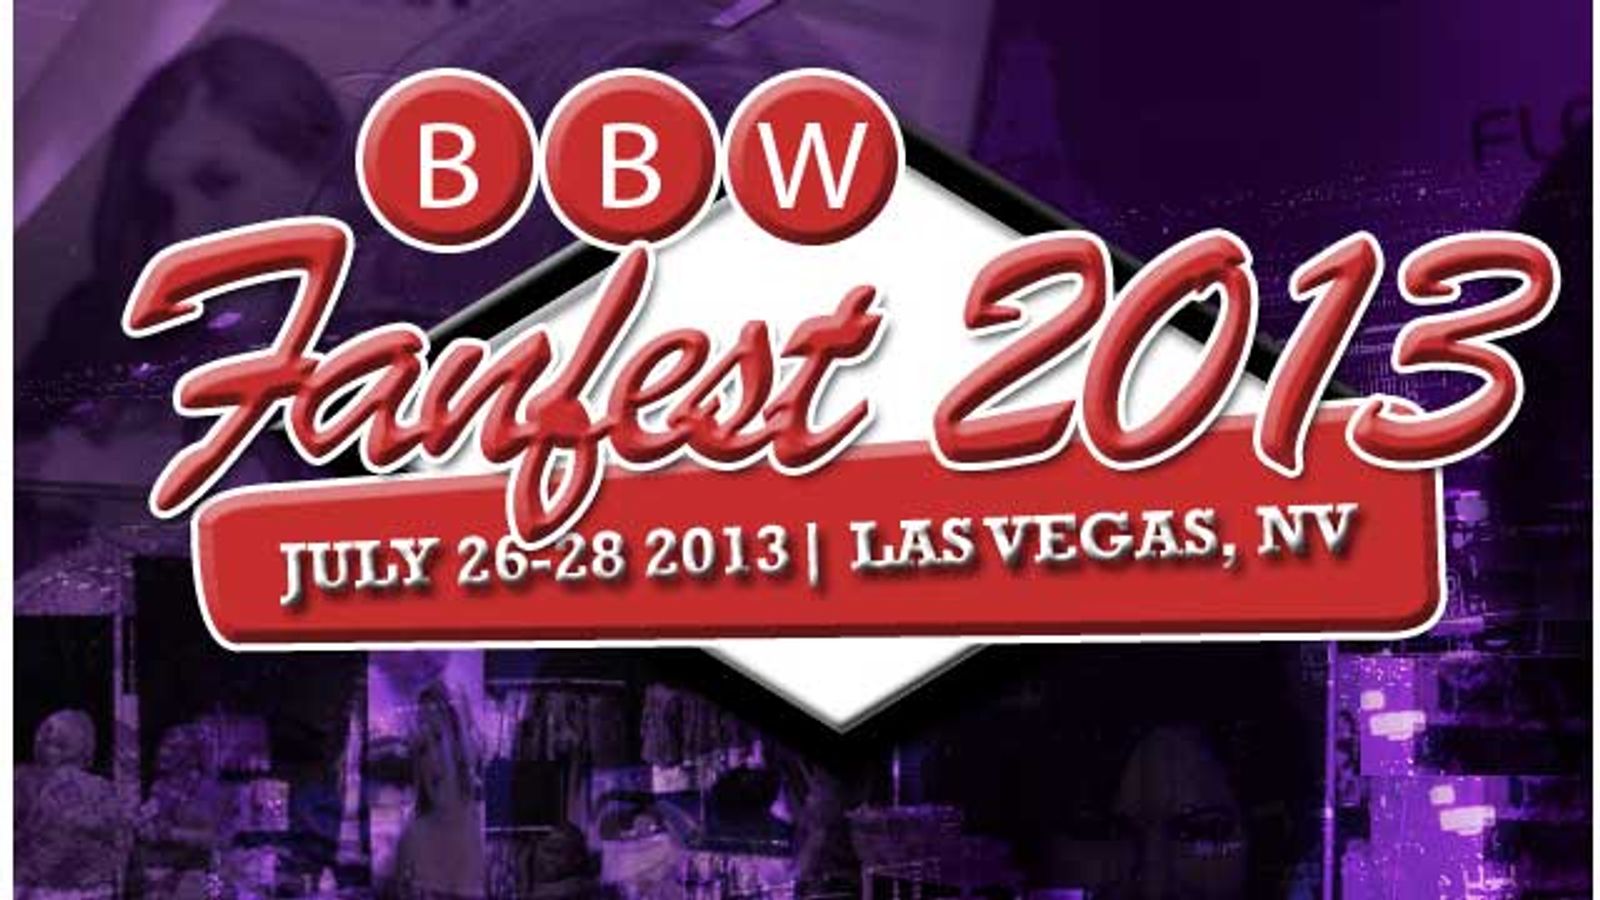 BBW FanFest Announces 2013 Award Nominations